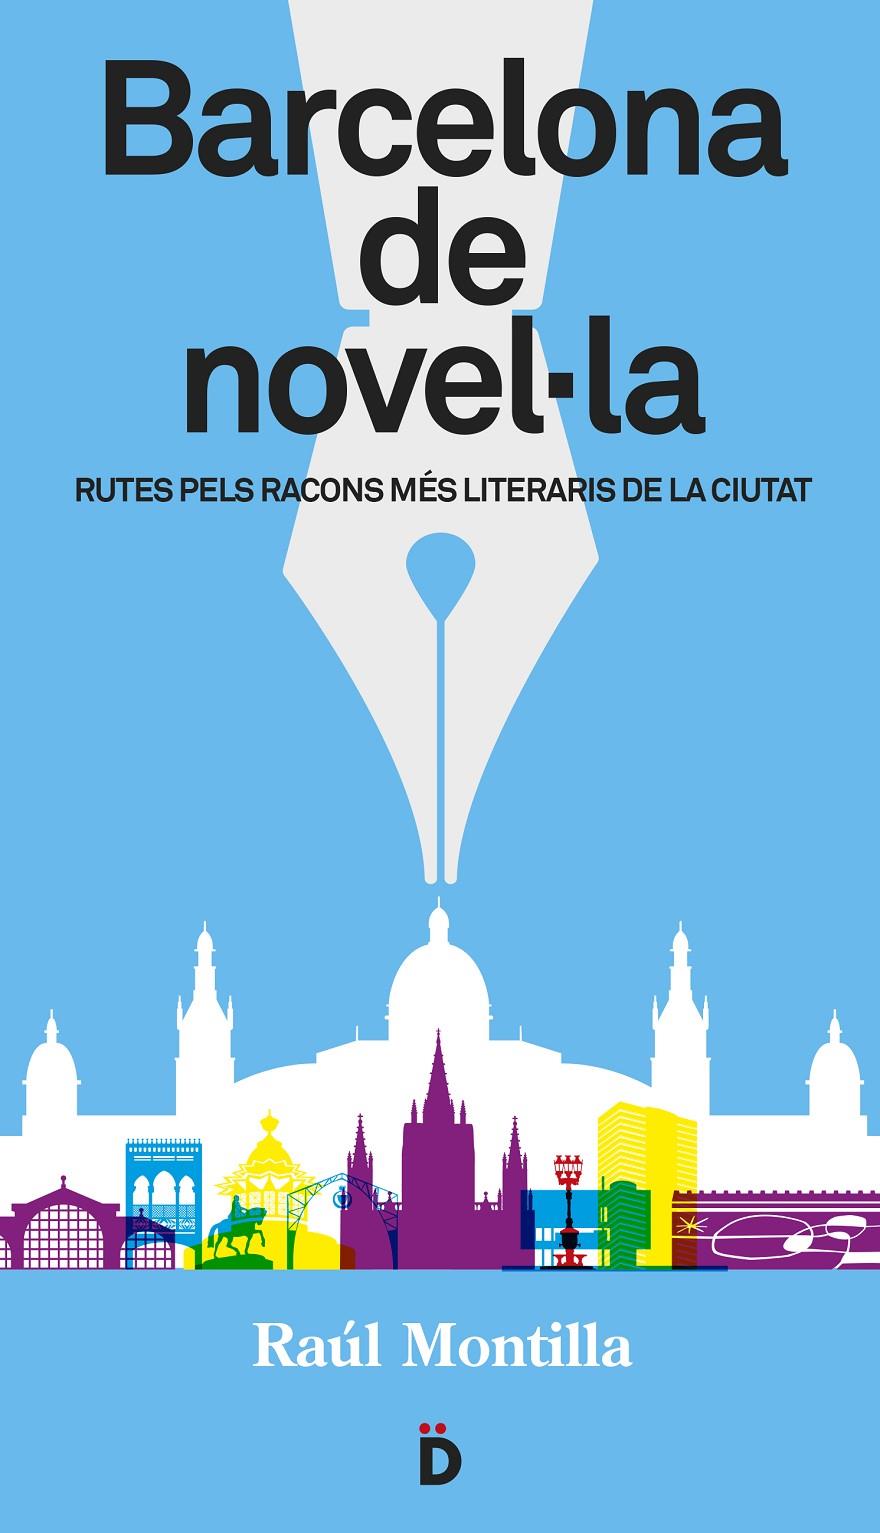 Barcelona de novel·la | Montilla, Raúl | Cooperativa autogestionària